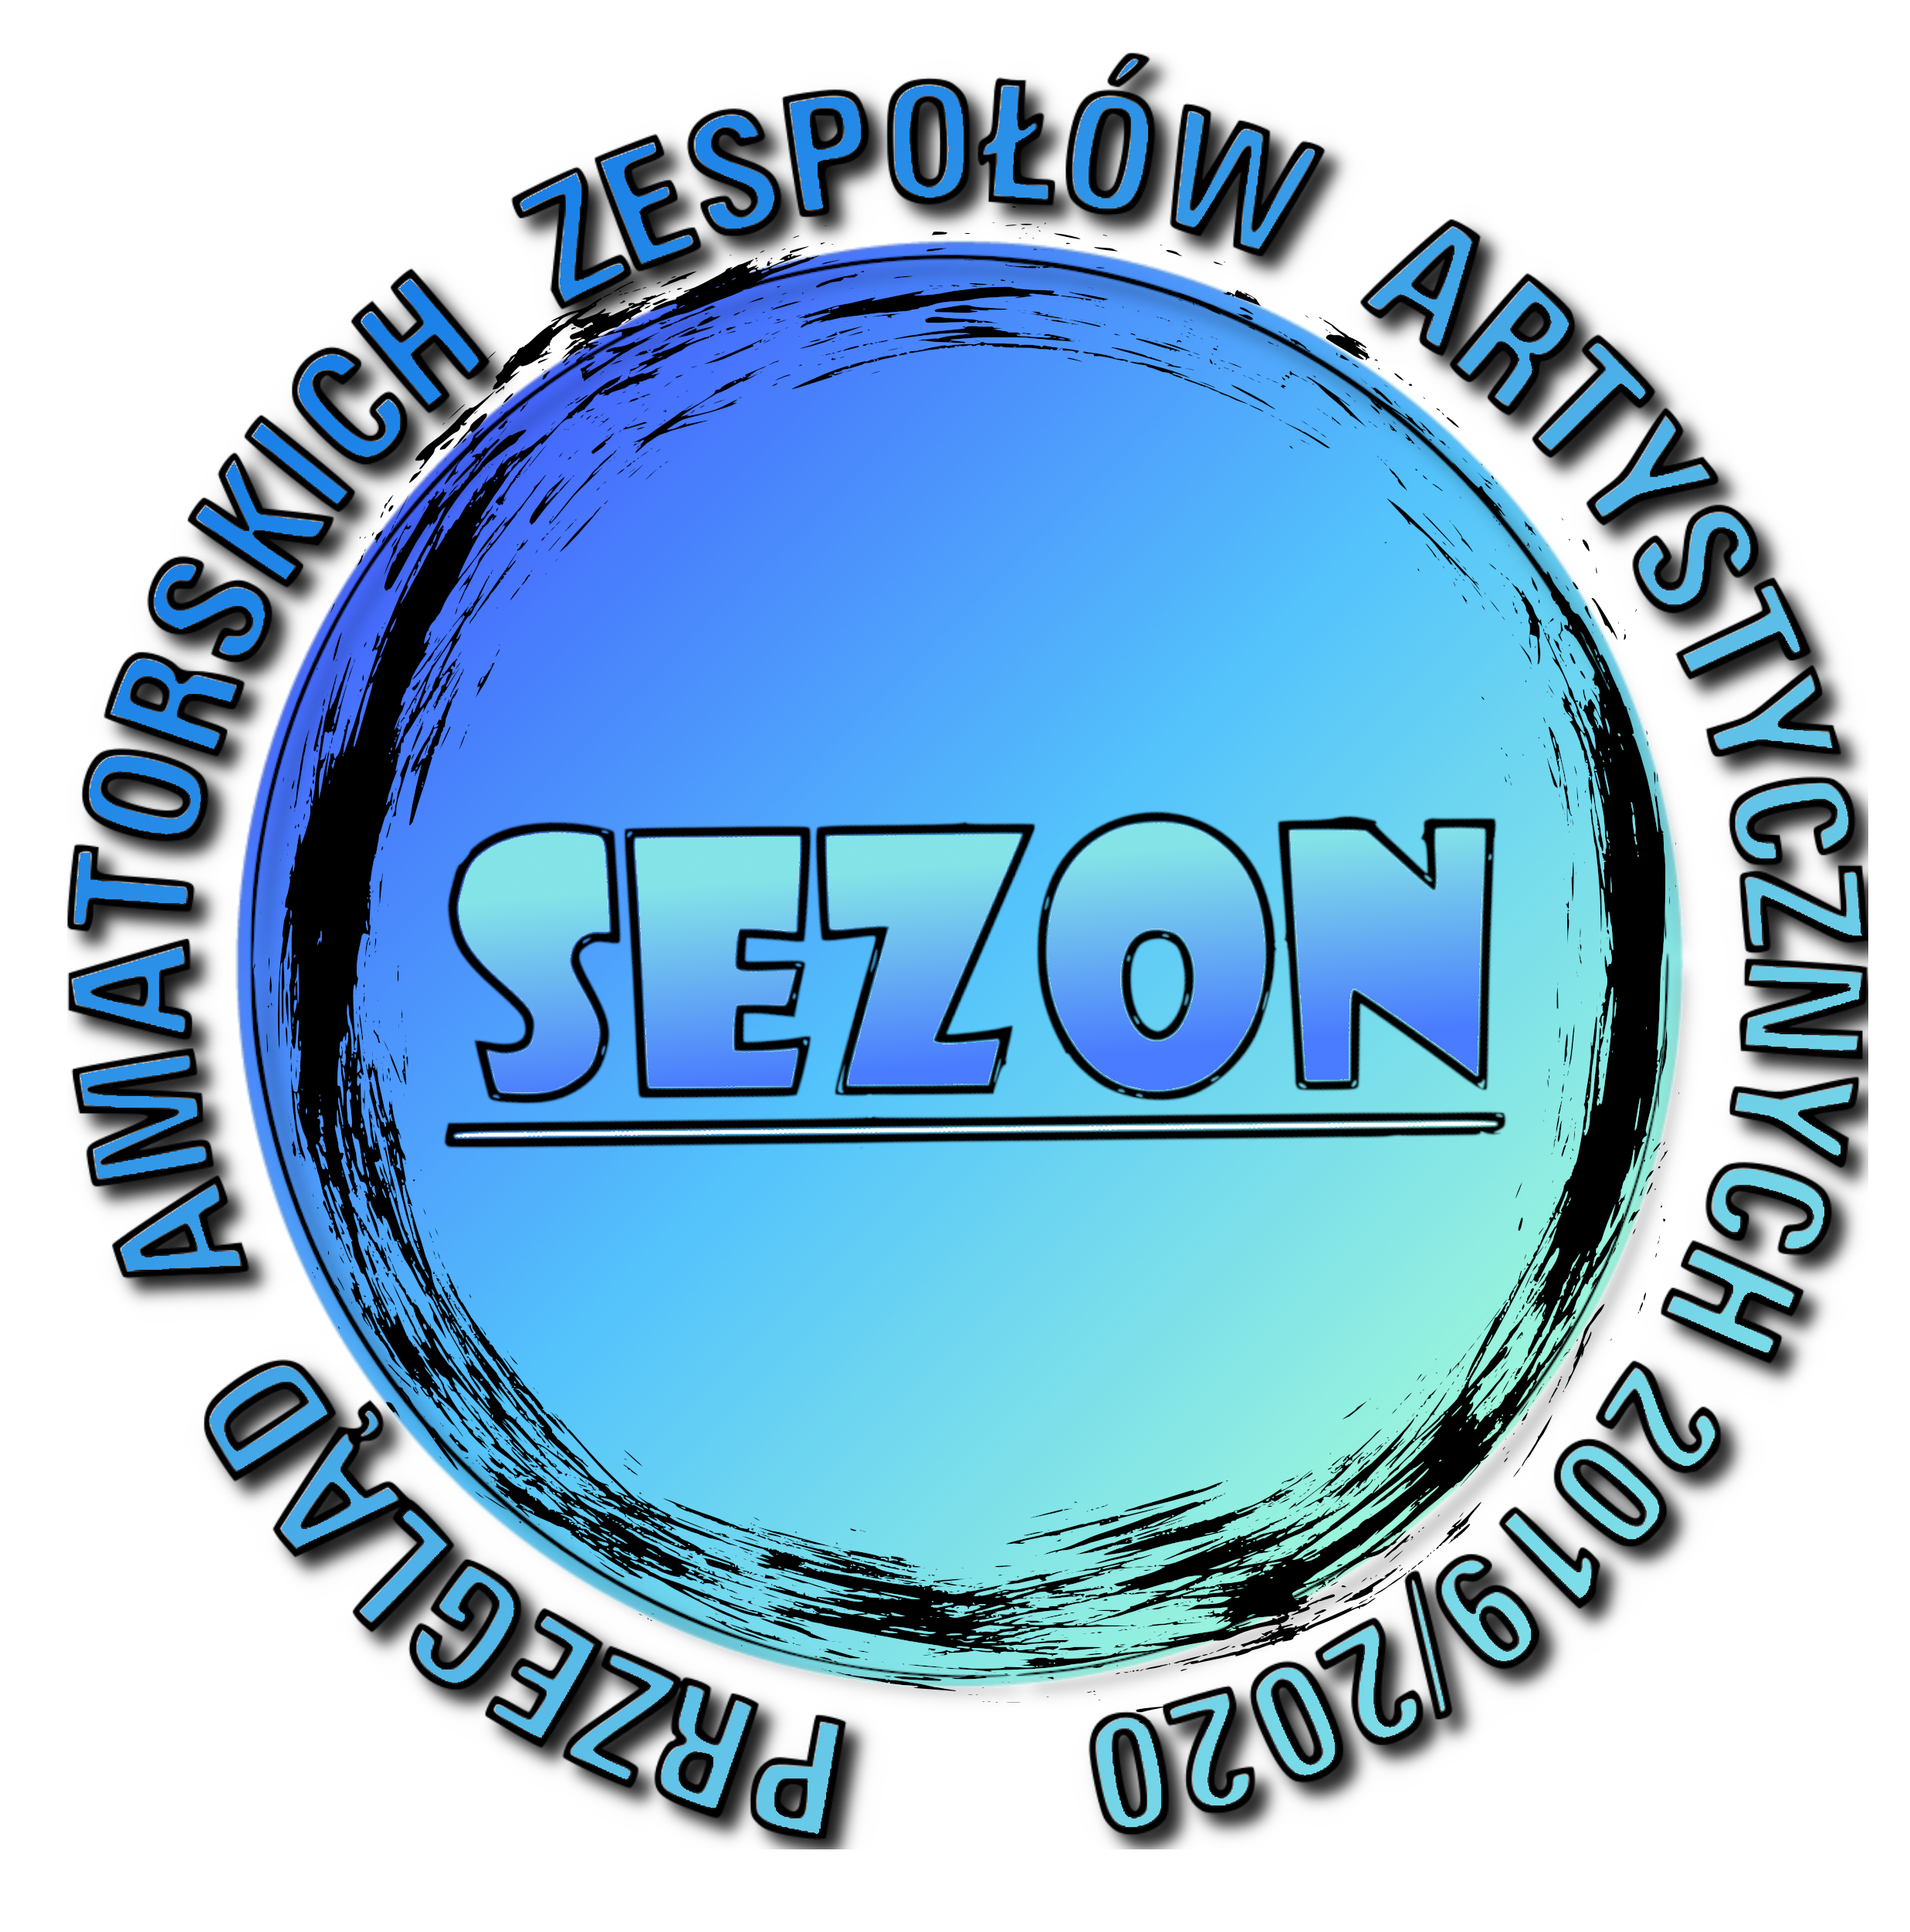 Werdykt Przeglądu SEZON 2020 w kategorii muzycznej